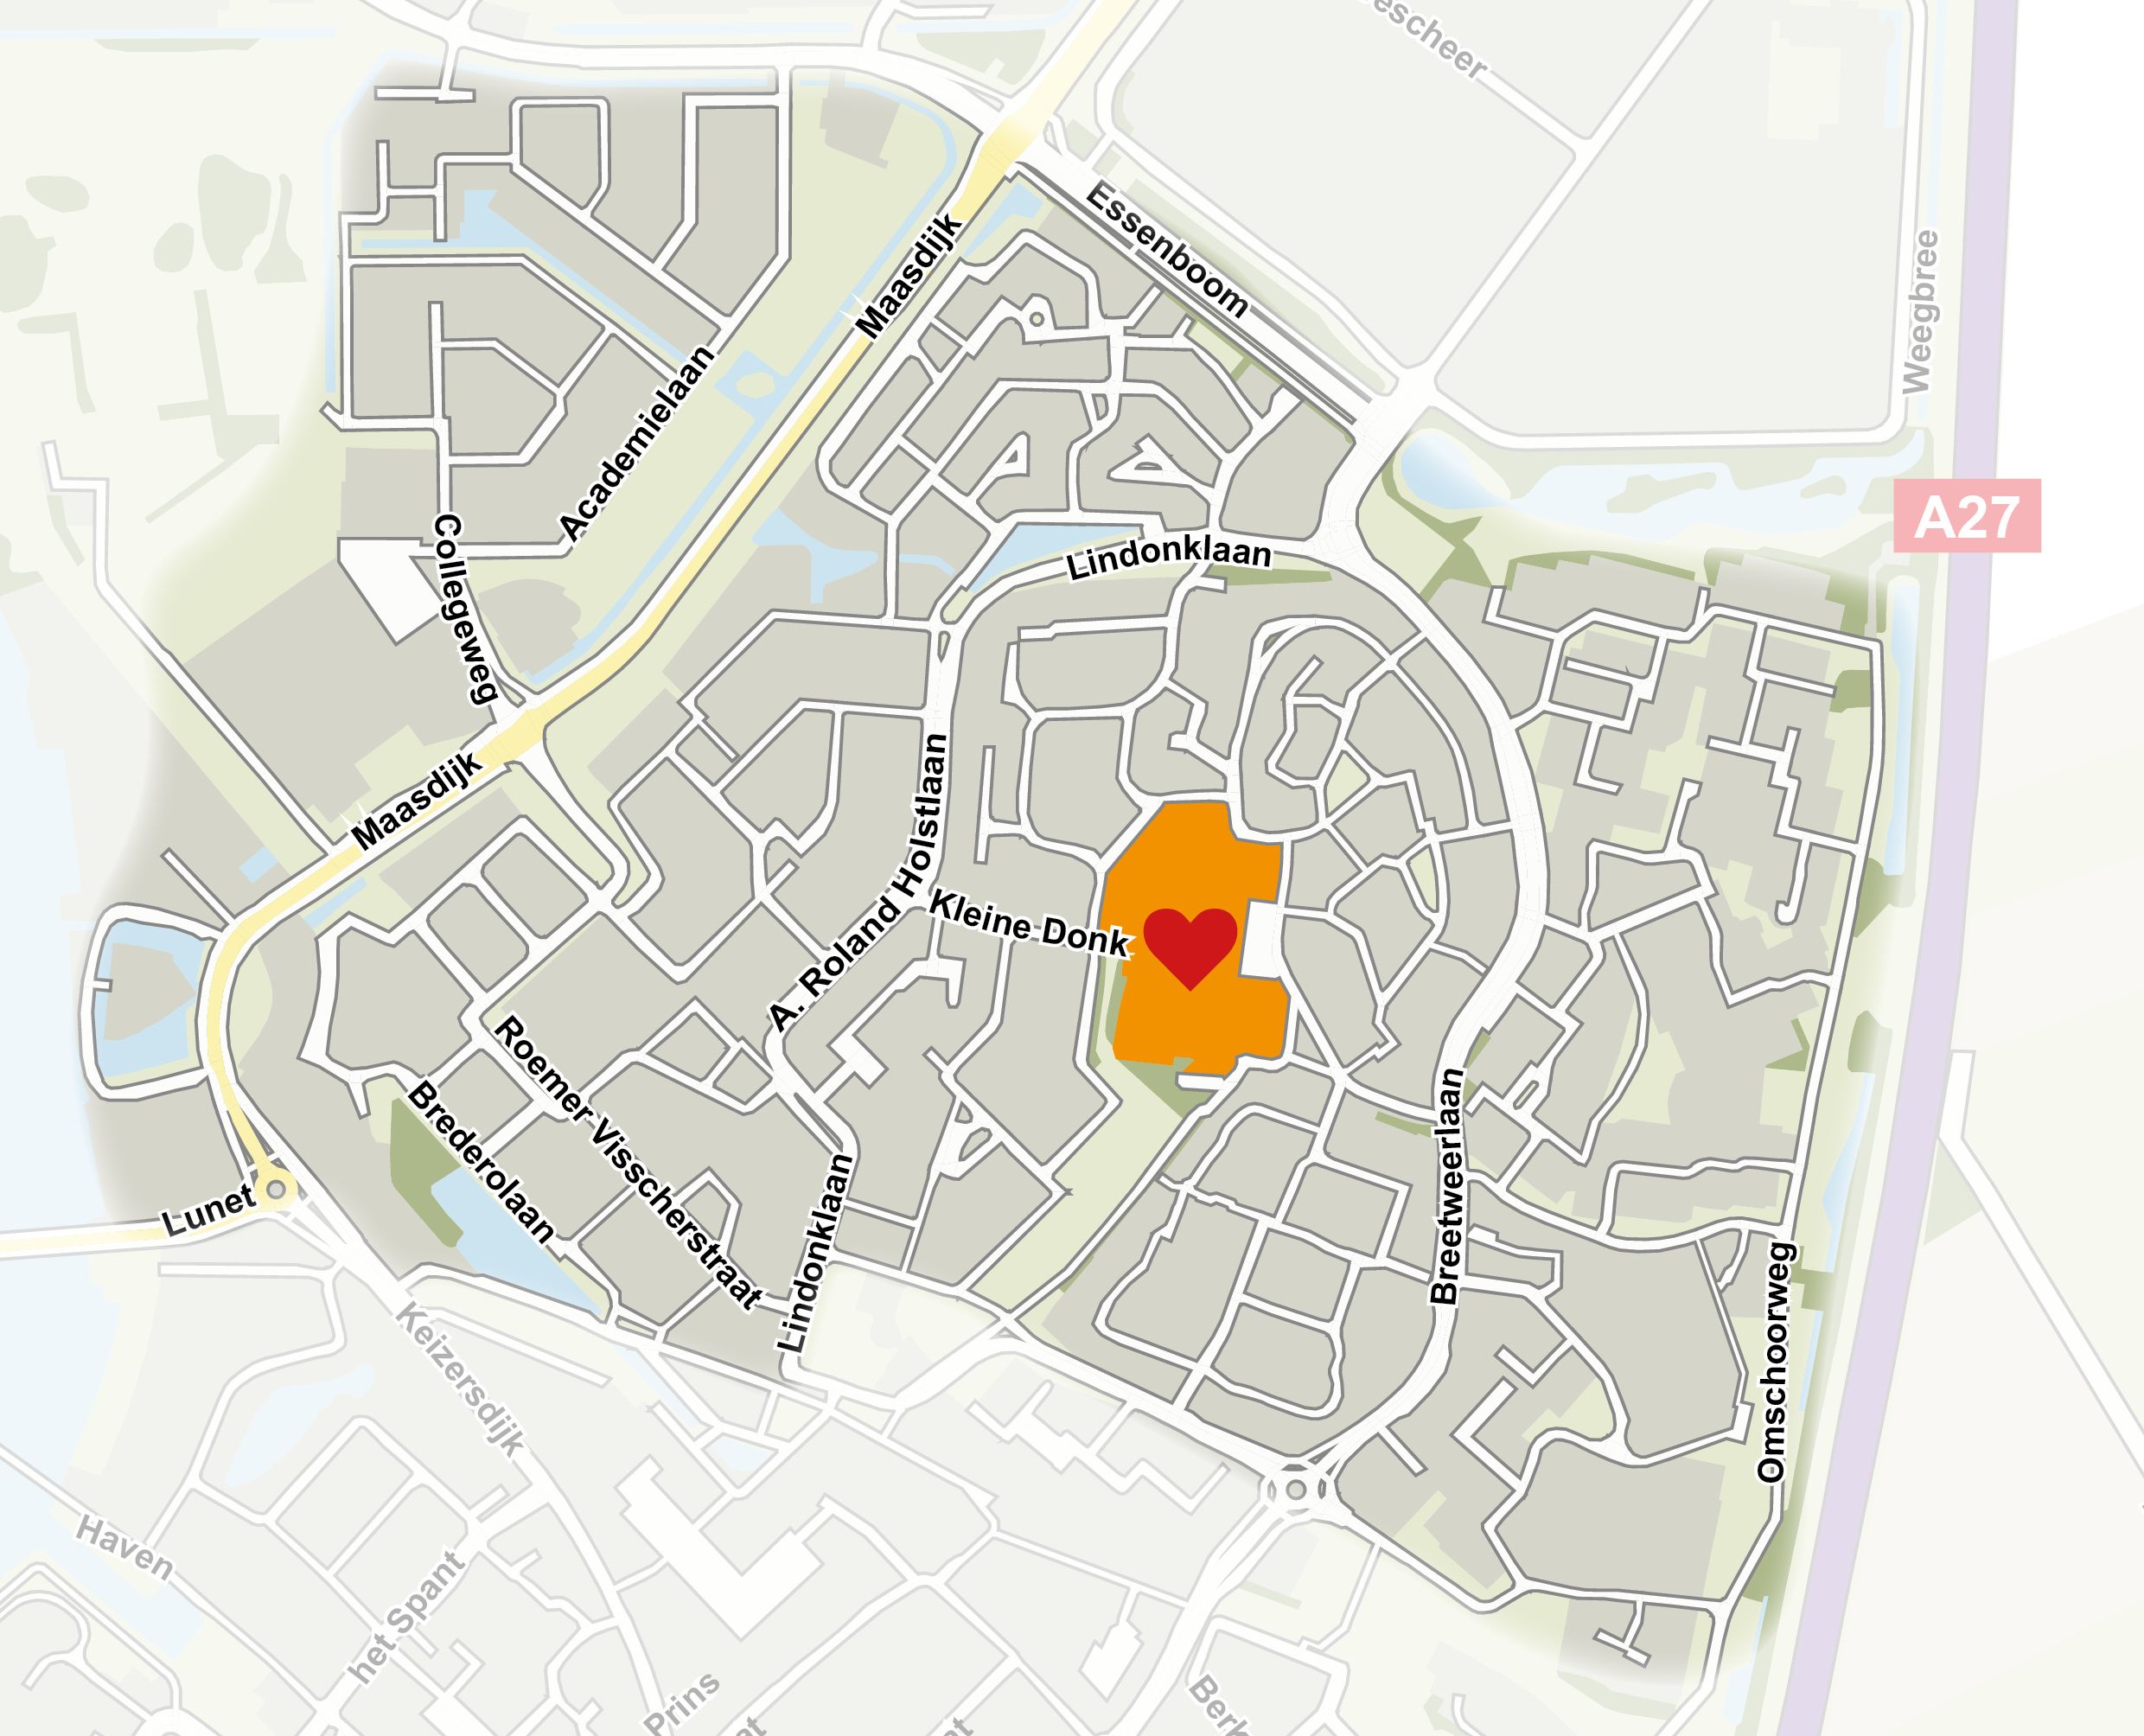 Wijkkaart Raamsdonksveer-Noord. In het midden ligt het gebied waar de nieuwe school komt. Dit is aangegeven in oranje met een rood hartje